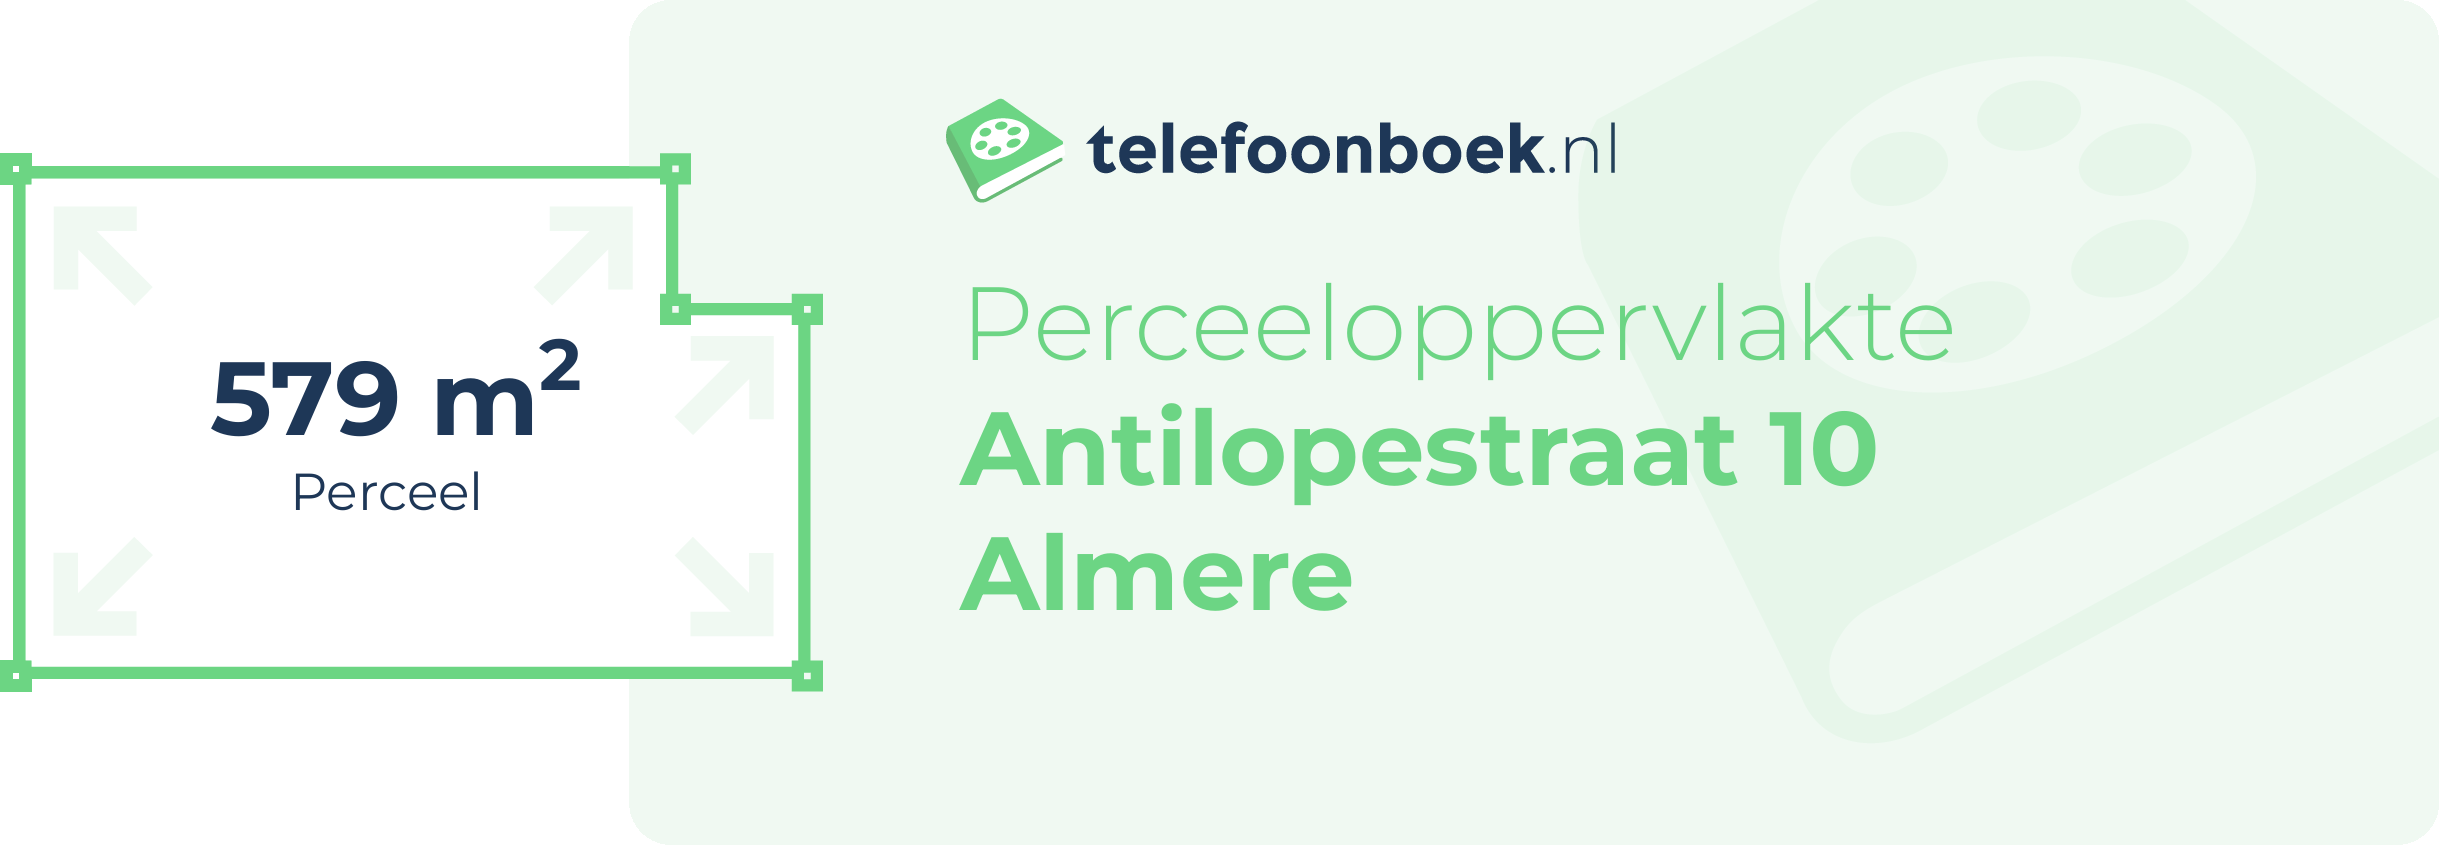 Perceeloppervlakte Antilopestraat 10 Almere